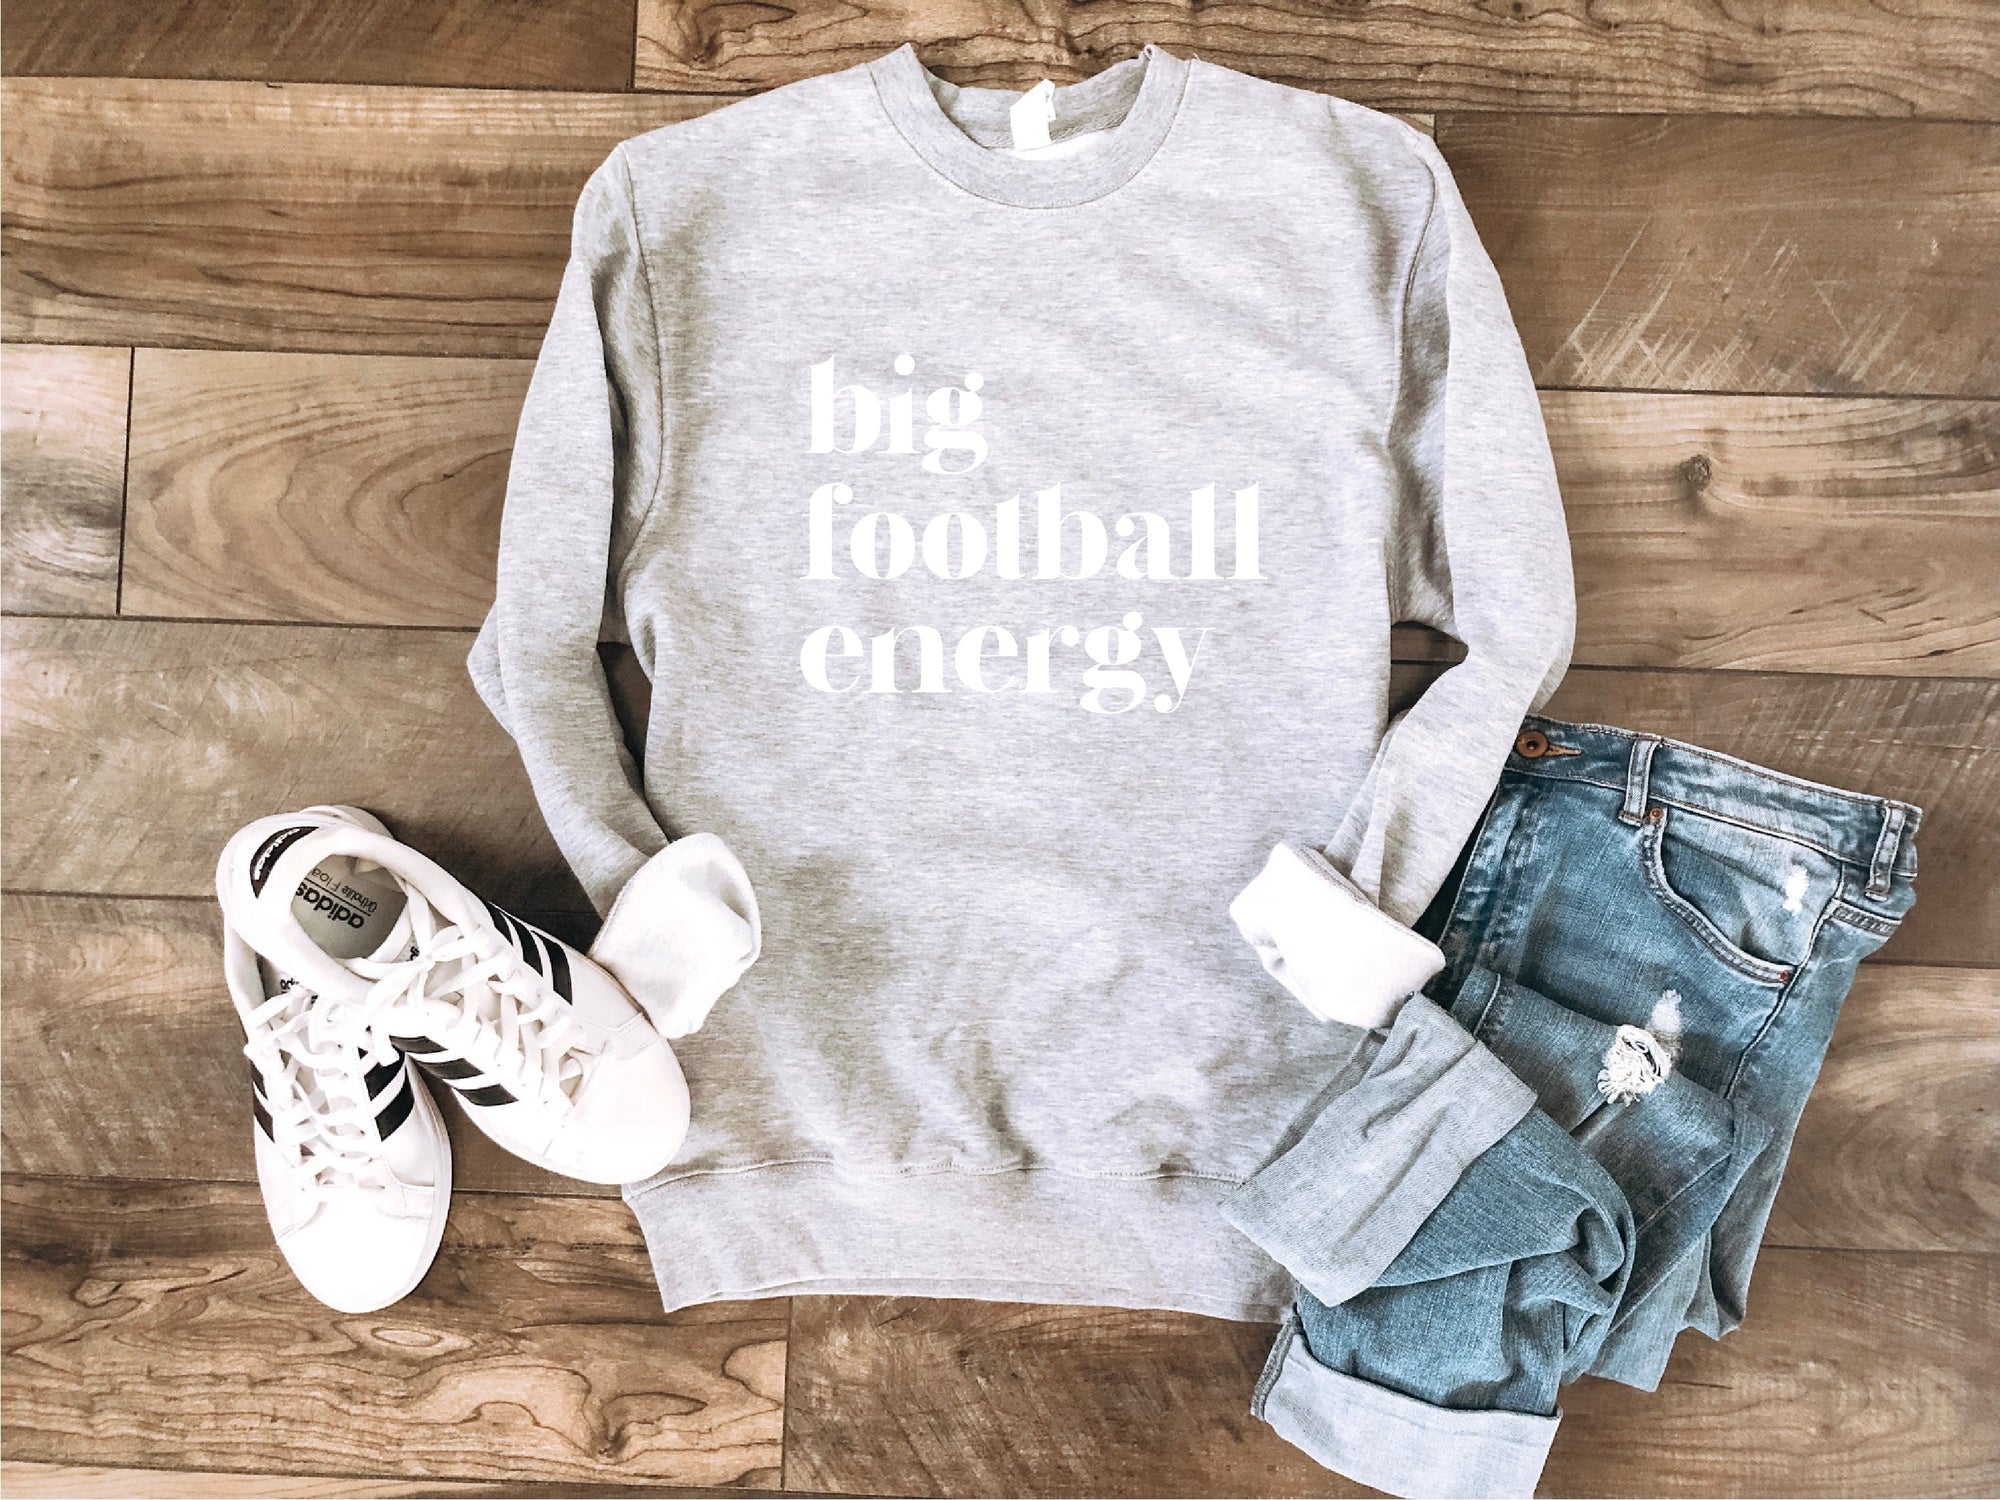 Big football energy basic sweatshirt Football collection Gildan 18000 sweatshirt 